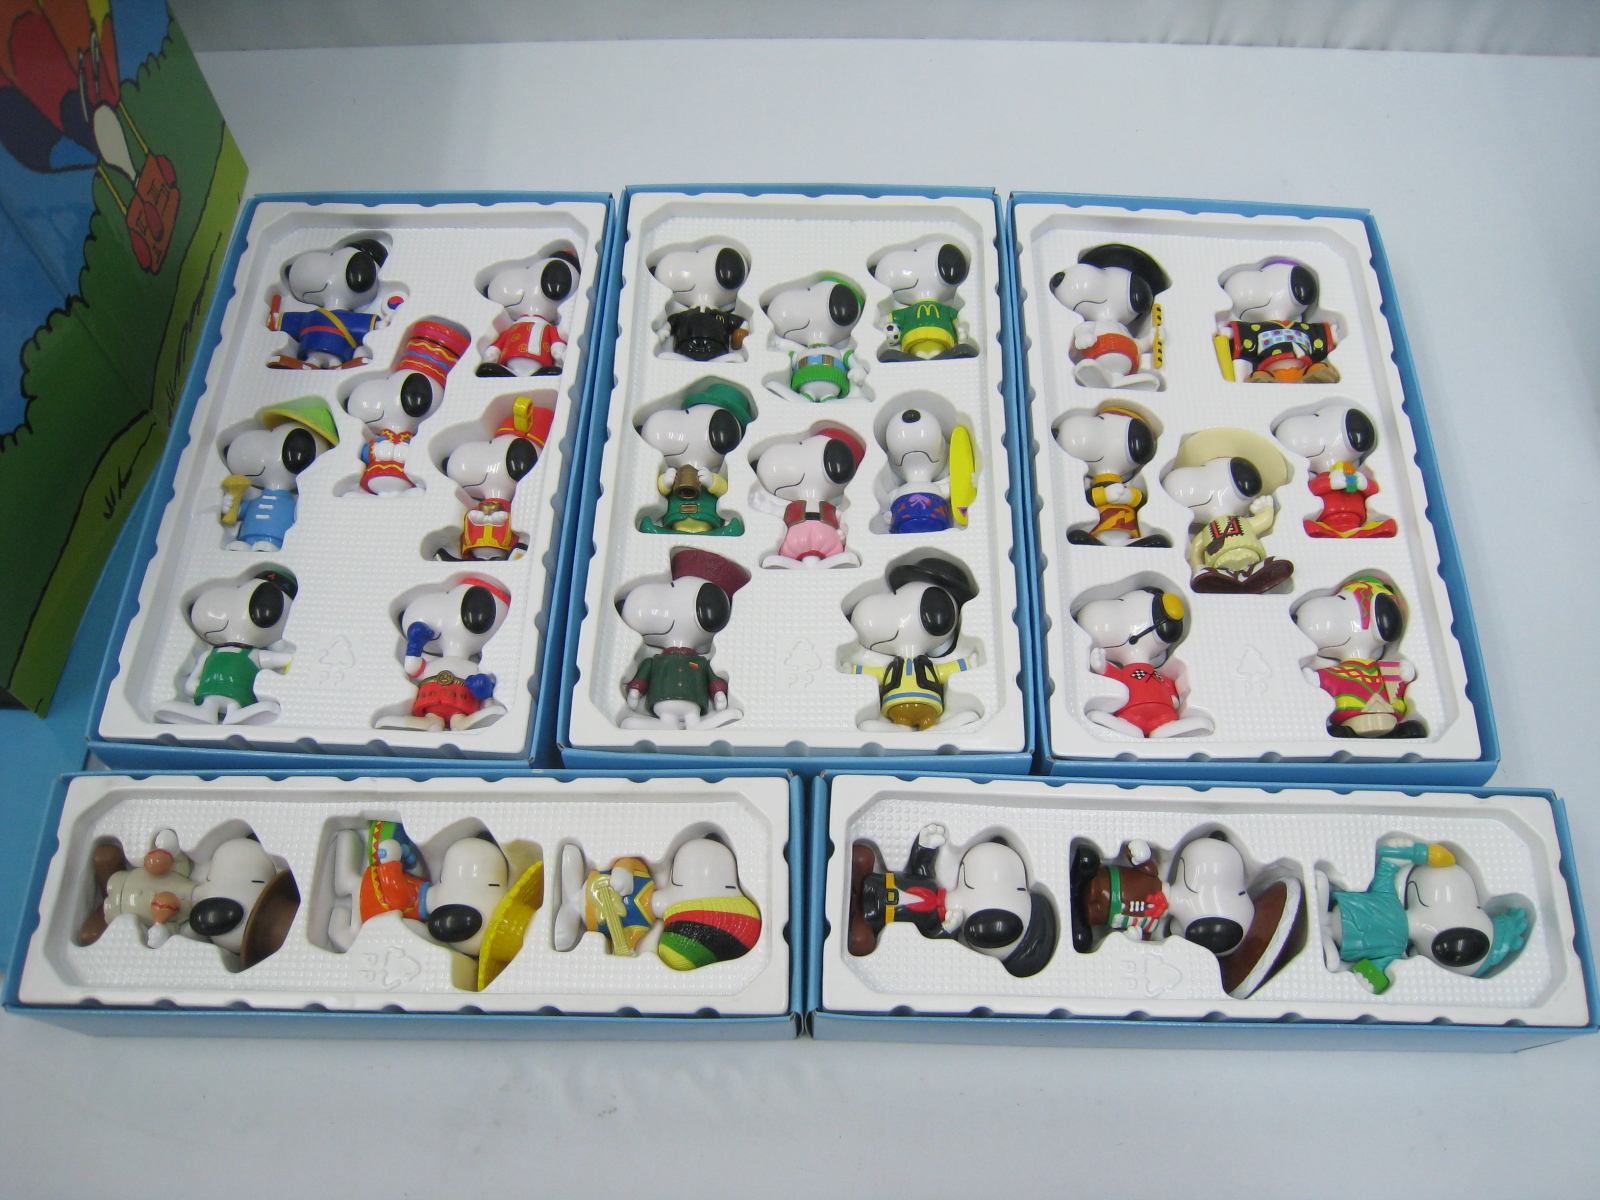 楽天市場 新品 1998年 マクドナルド スヌーピー ワールドツアー2 フィギュア 28種 約10センチ コレクションボックス セット Snoopy World Tour2 セブンヘブンストア